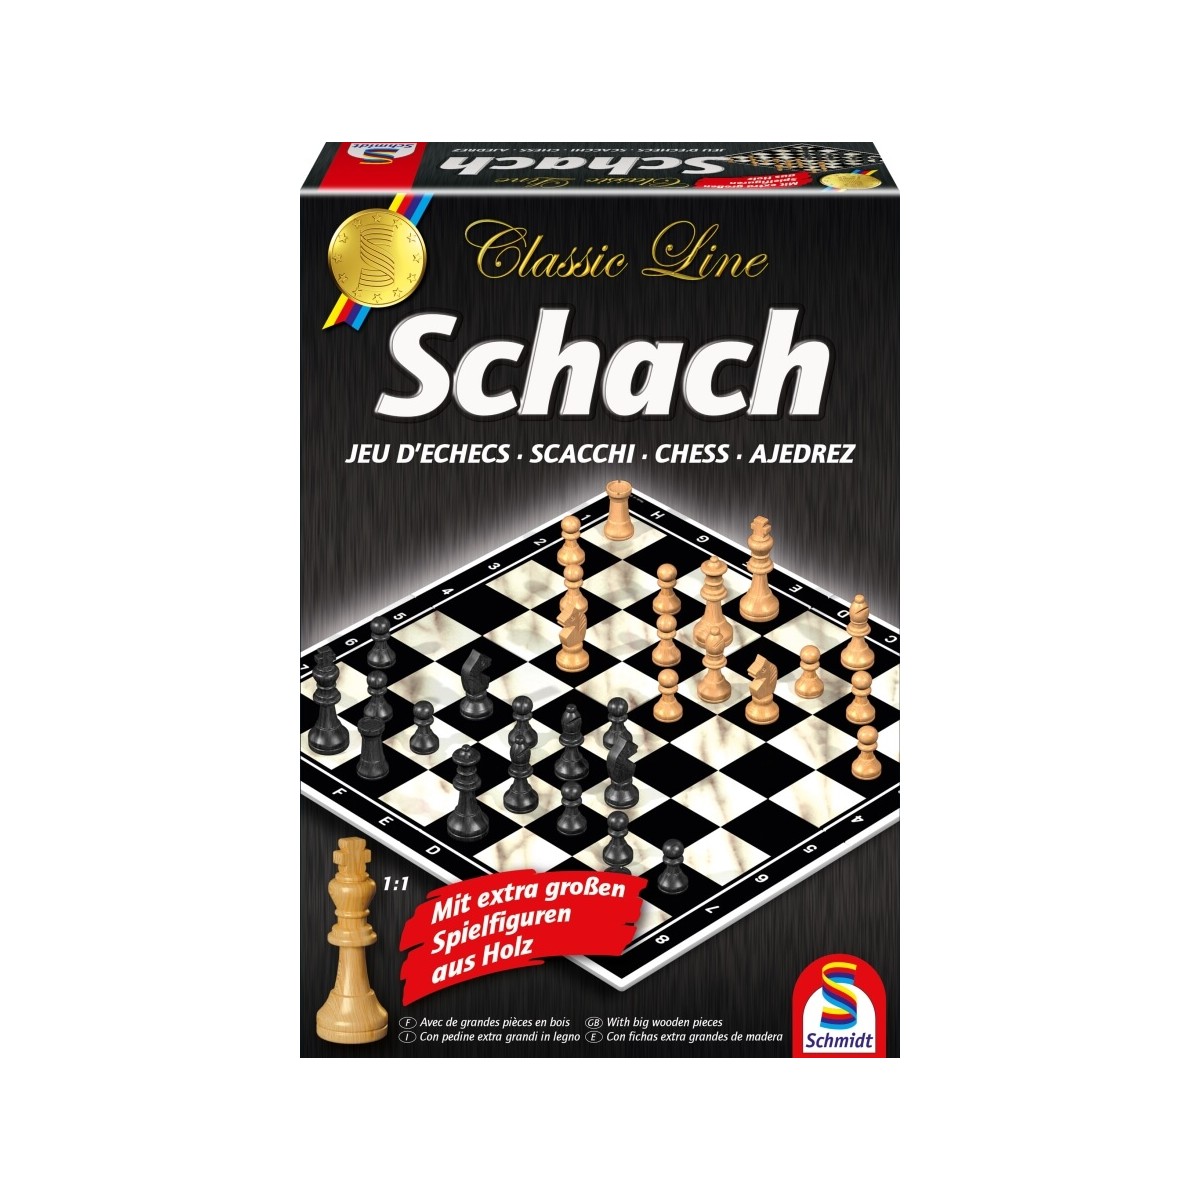 Spielwaren Krömer - Schmidt Spiele - Classic Line - Schach